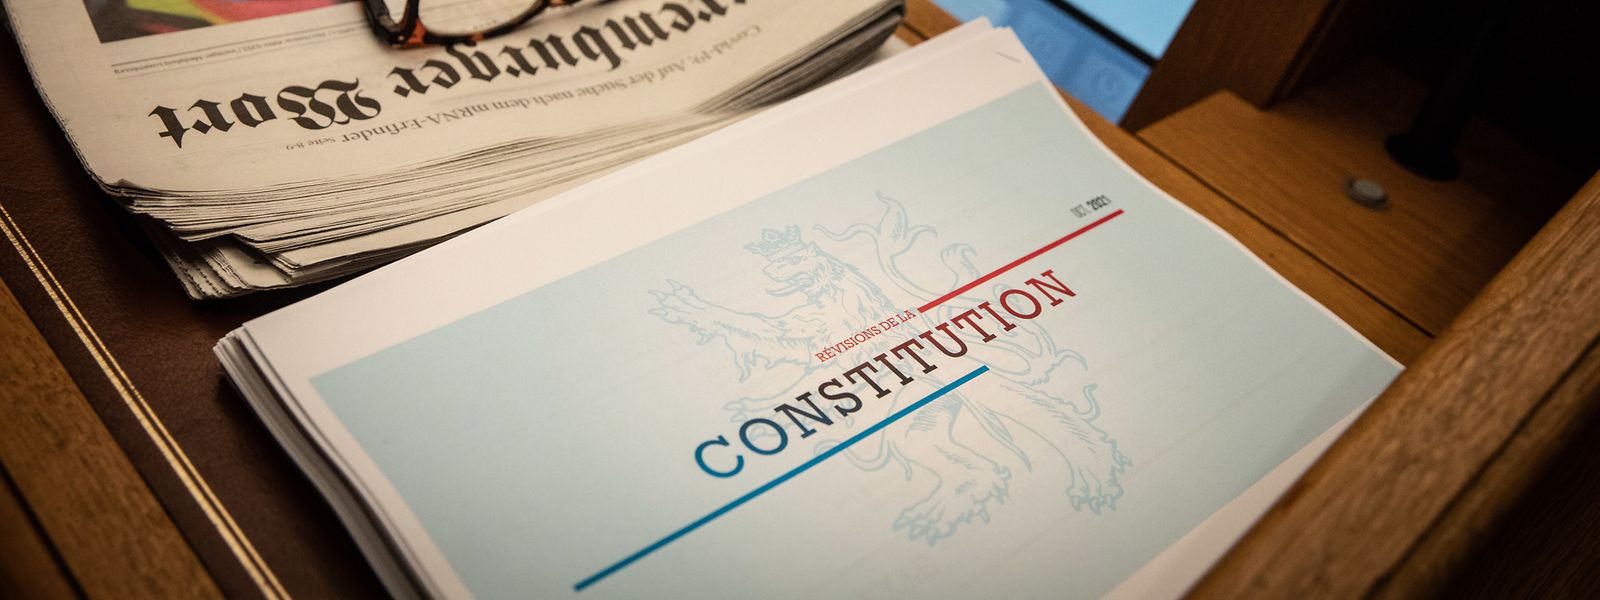 In puncto Aufklärung und Informierung über die neue Verfassung besteht noch reichlich Luft nach oben.   